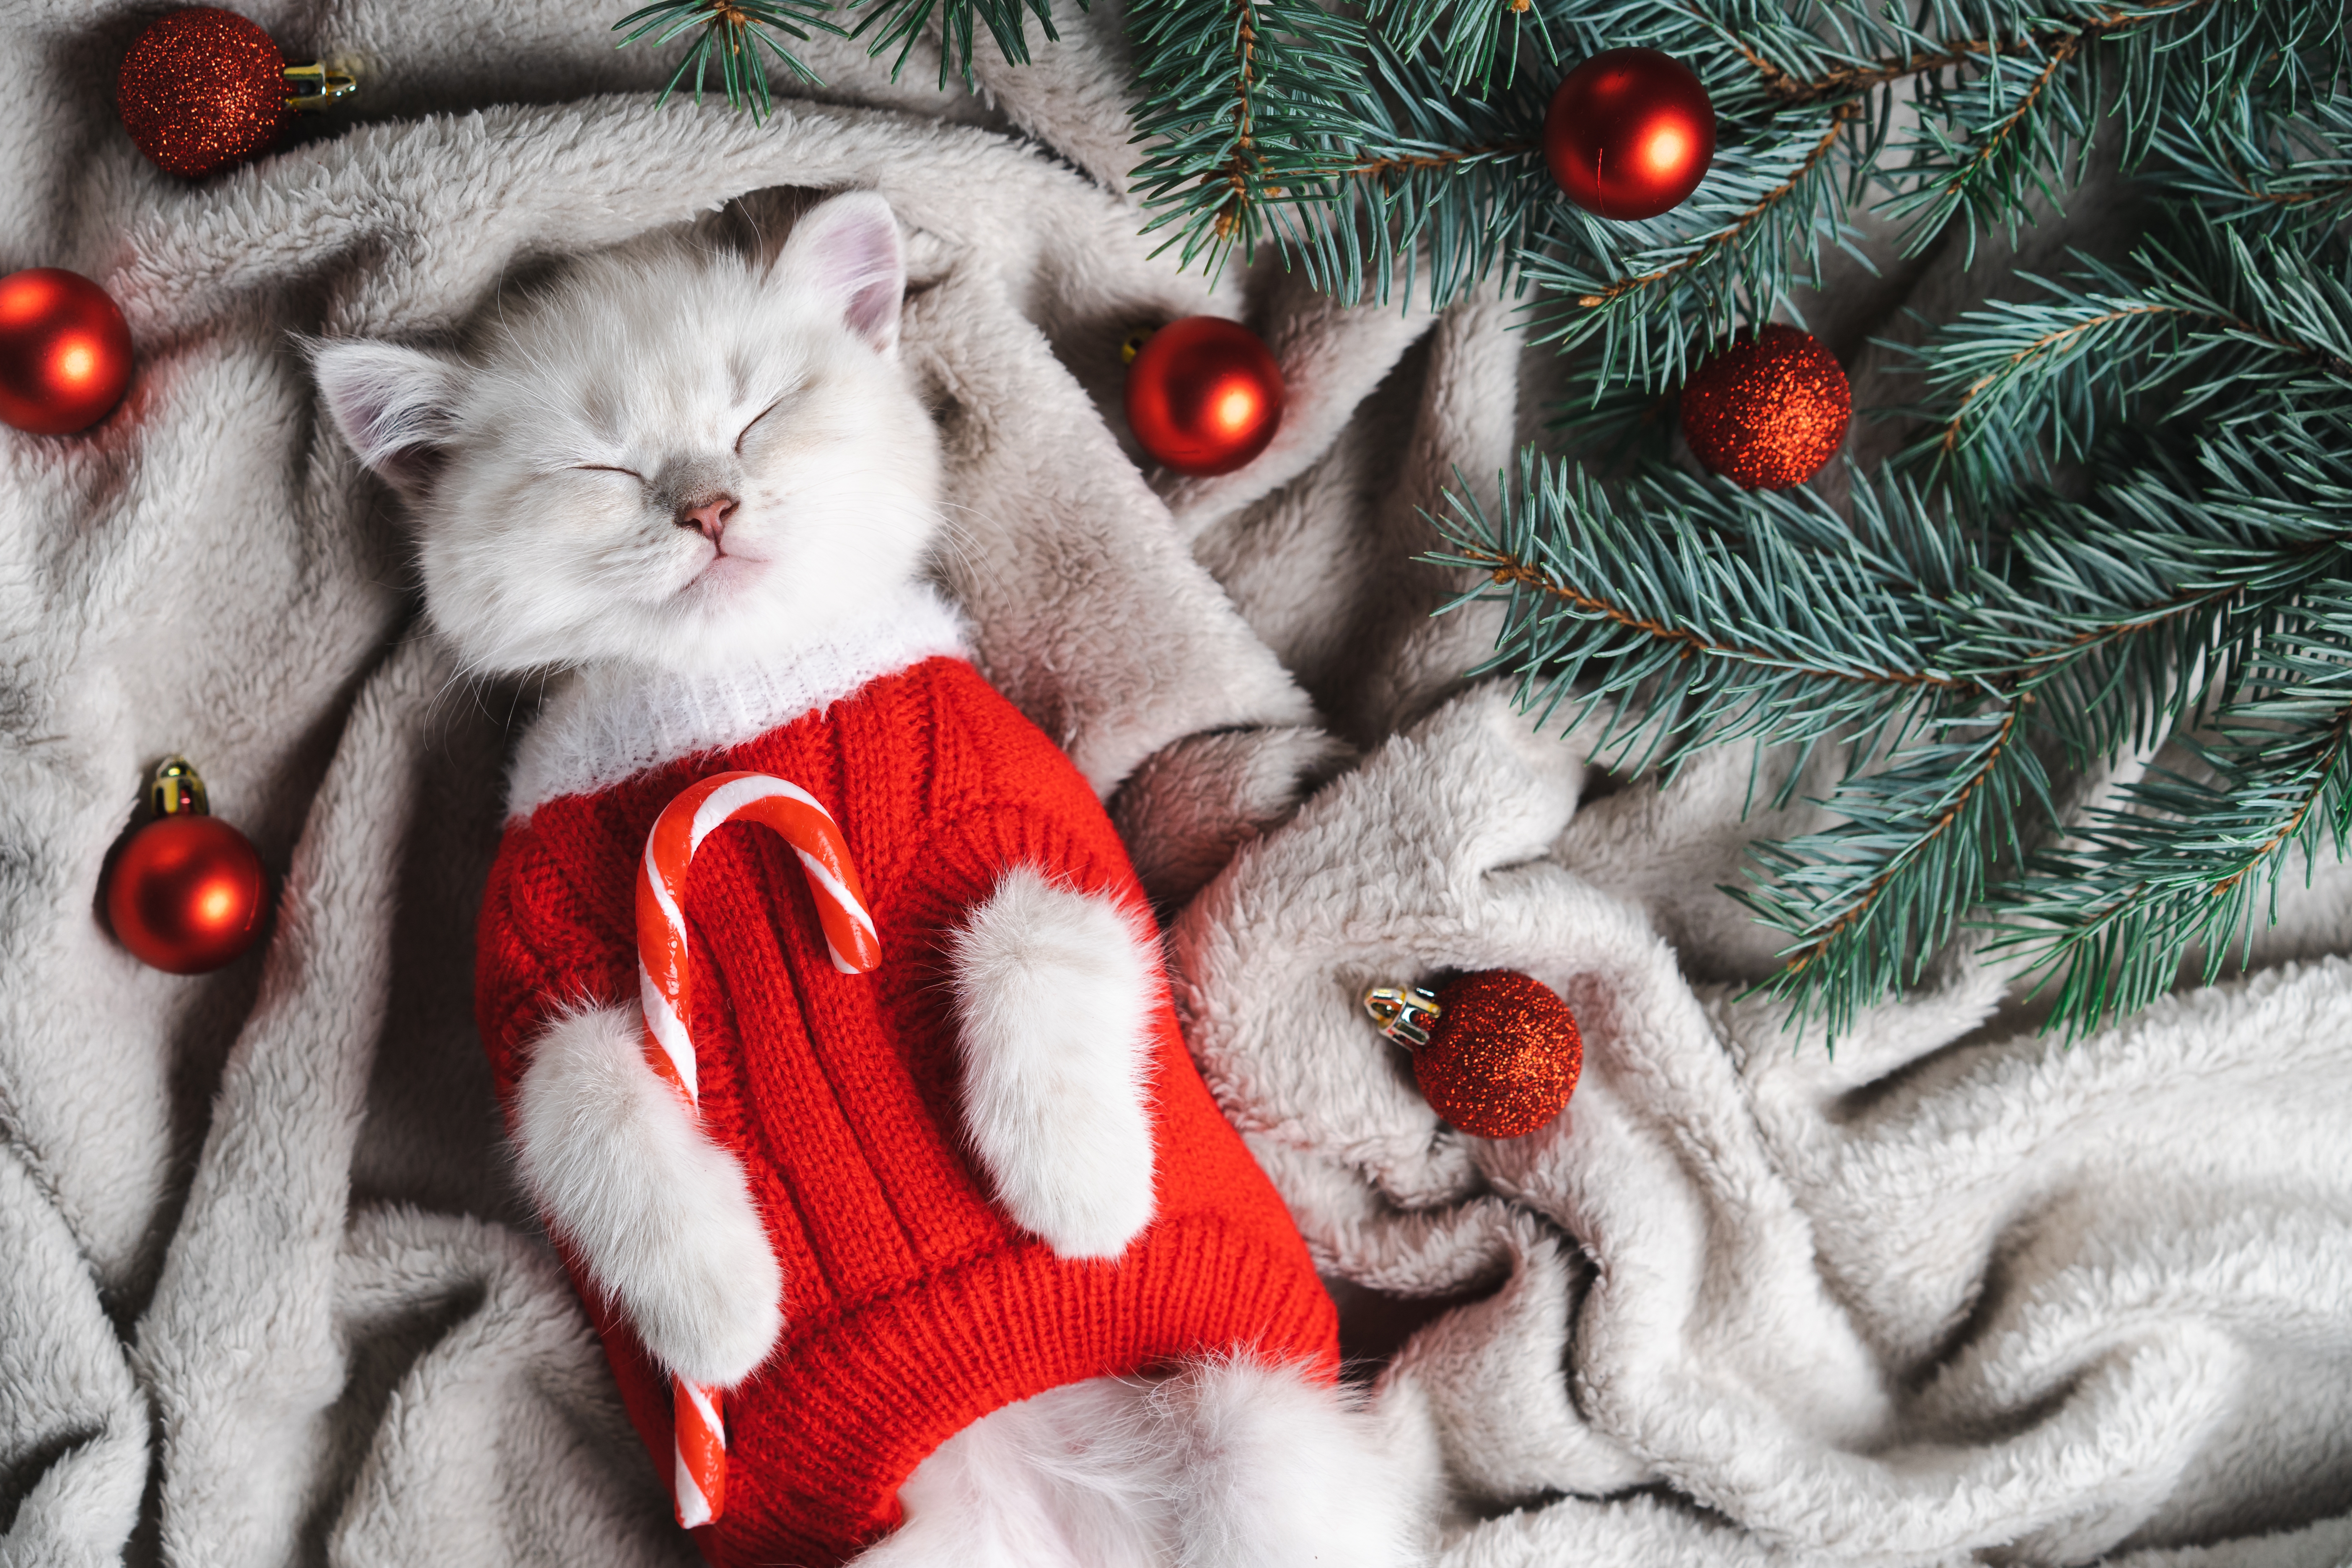 Un adorable chat de Noël portant un pull rouge est allongé sur une couverture grise, les yeux fermés | Source : Shutterstock